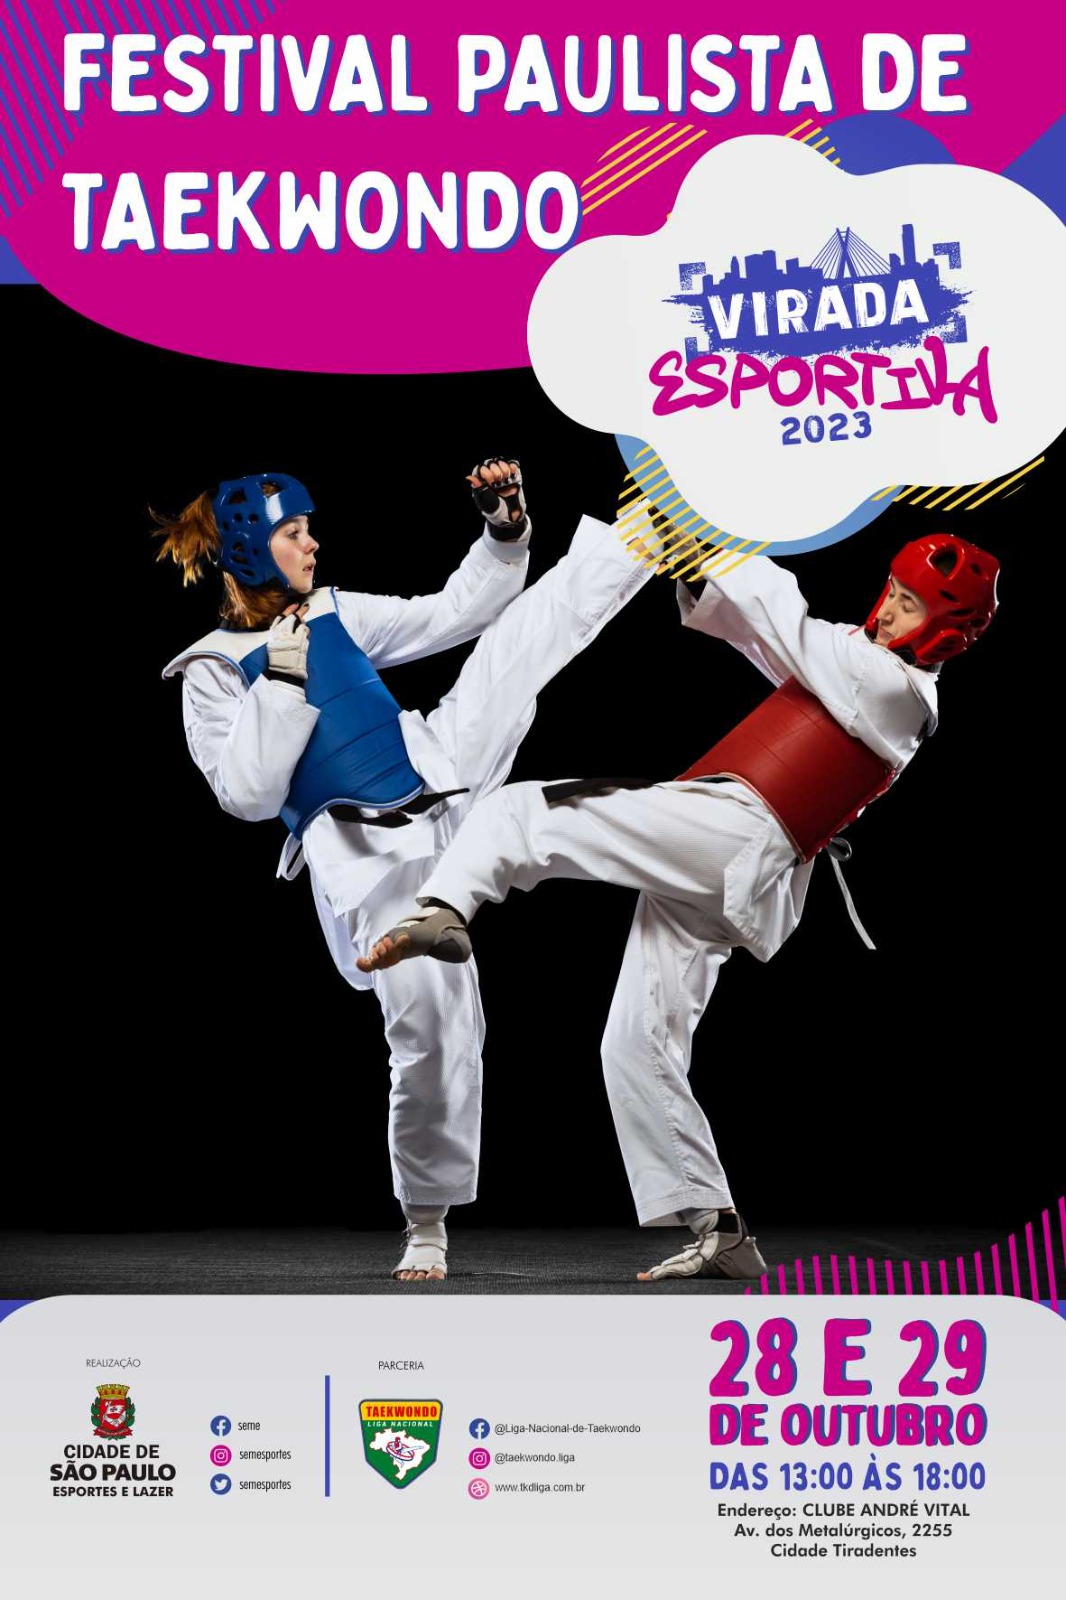 Festival Paulista de Taekwondo na Virada Esportiva 2023